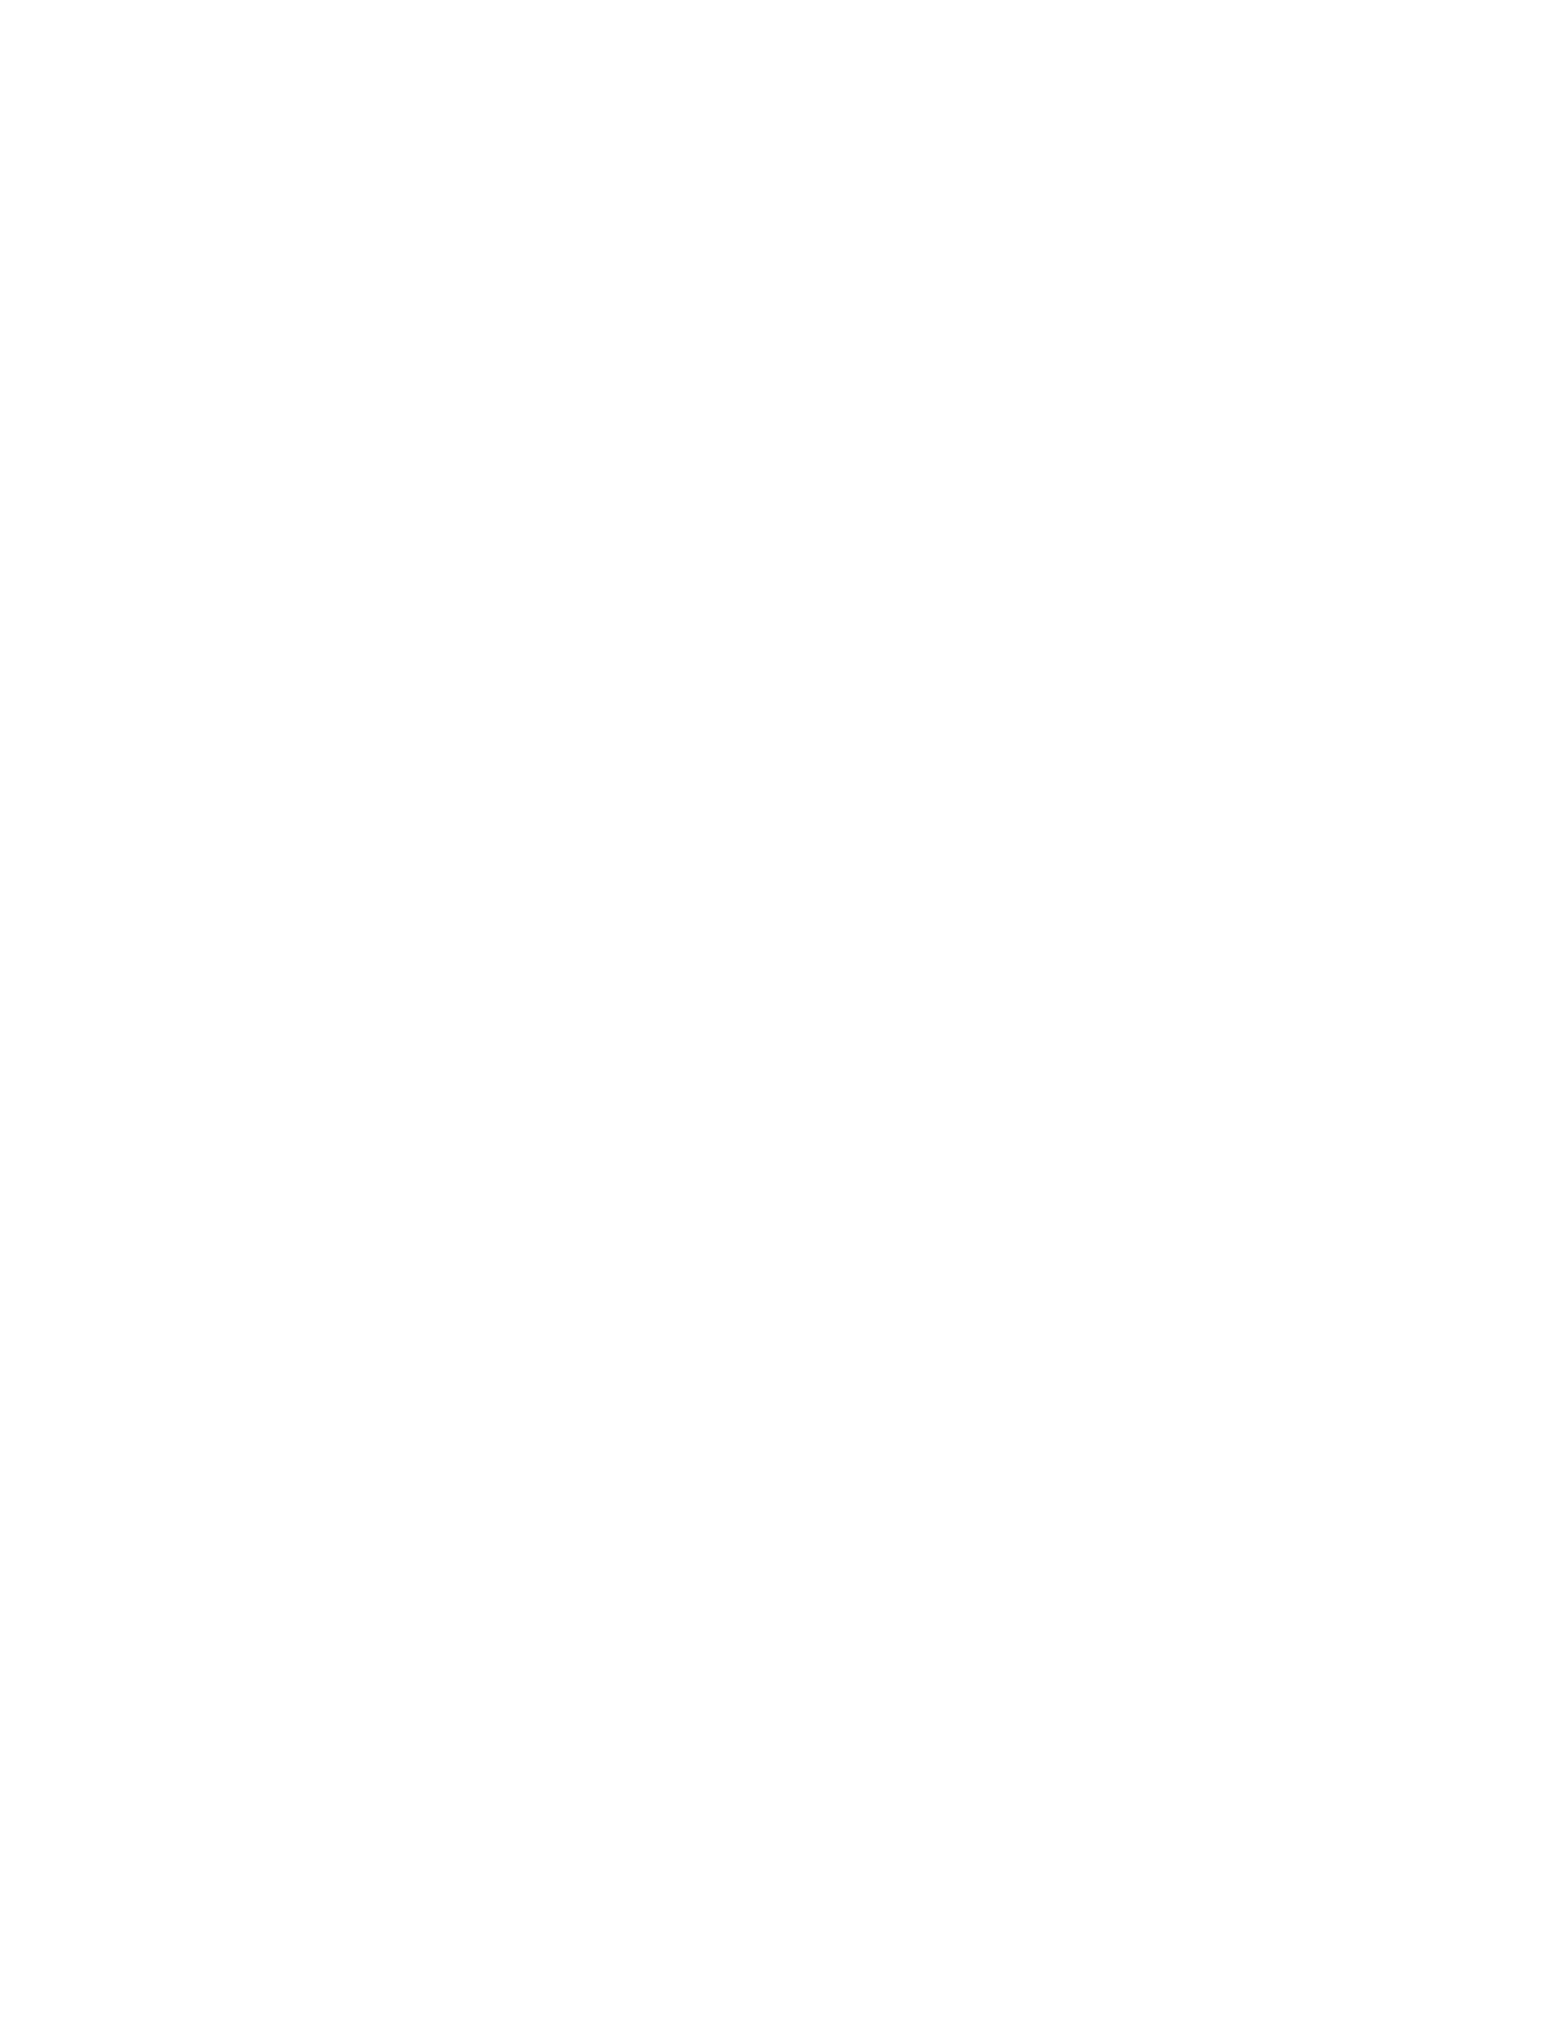 Guitarking